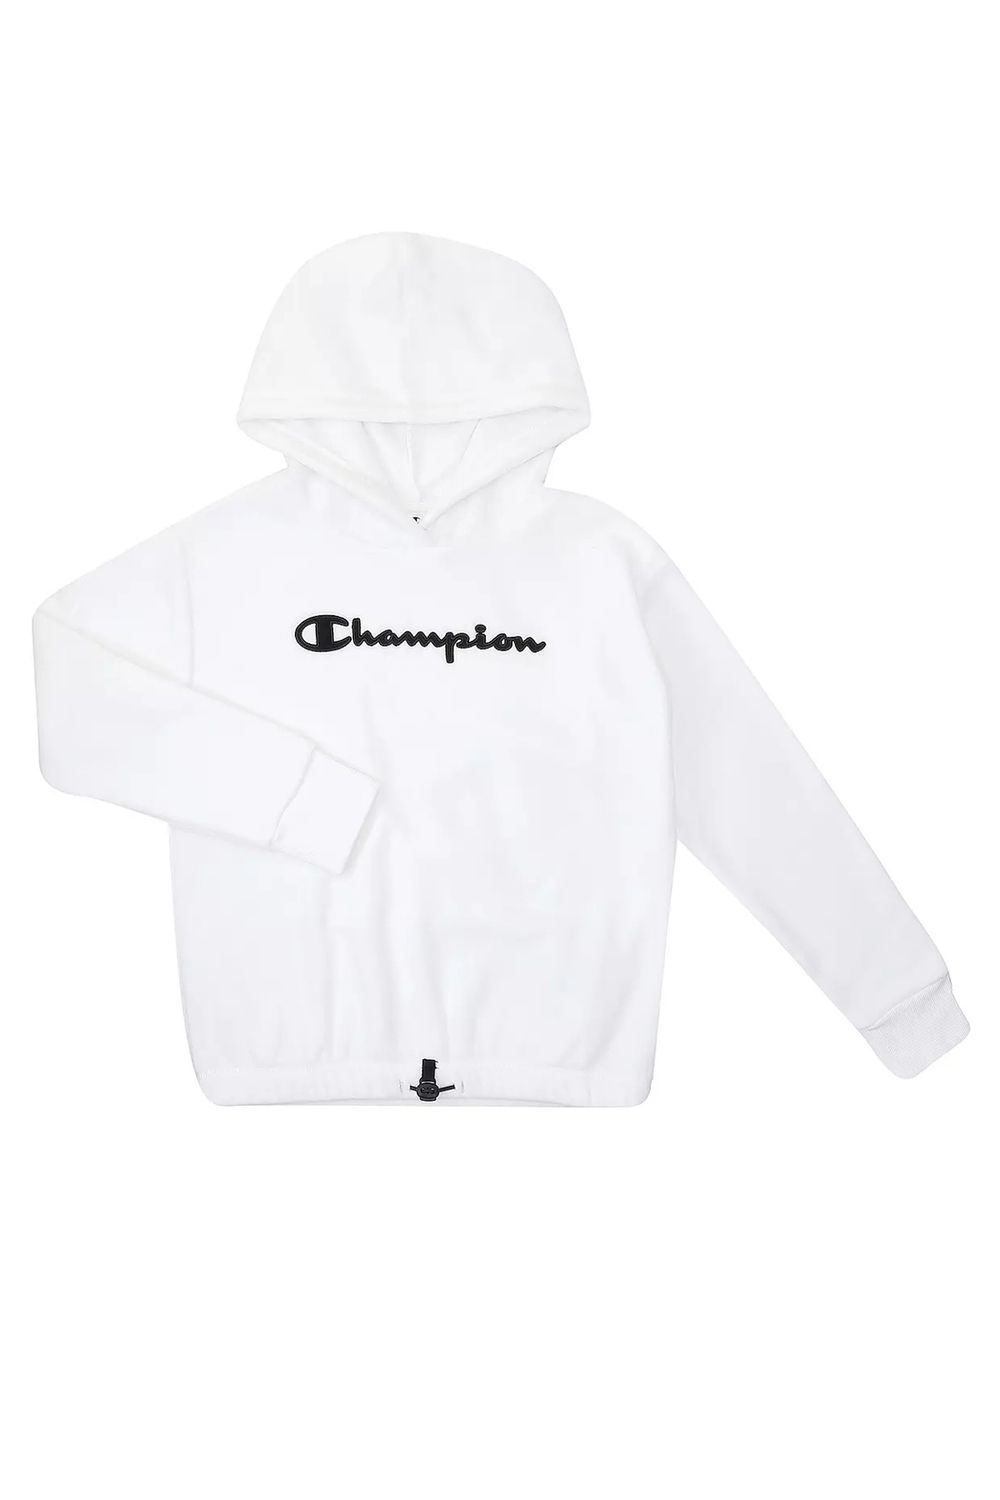 Trendyol Champion Sweatshirt Weiß - Regular - Fit -